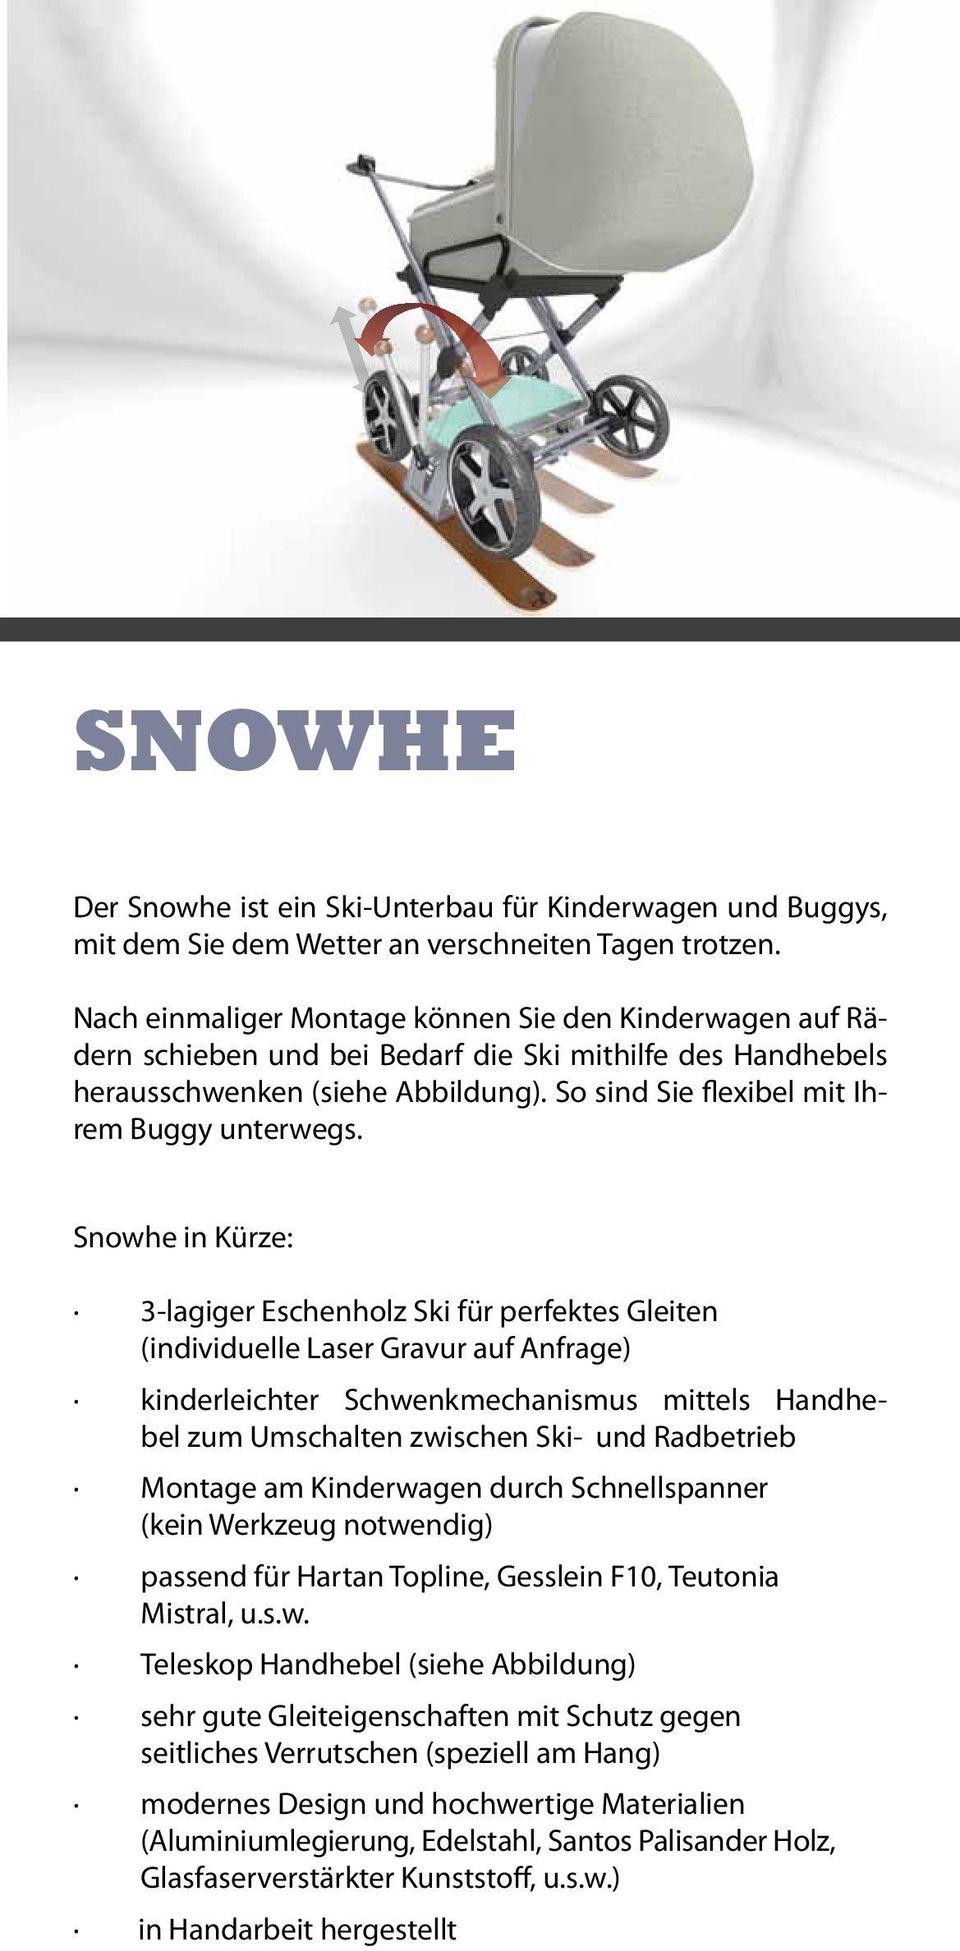 Snowhe in Kürze: 3-lagiger Eschenholz Ski für perfektes Gleiten (individuelle Laser Gravur auf Anfrage) kinderleichter Schwenkmechanismus mittels Handhebel zum Umschalten zwischen Ski- und Radbetrieb